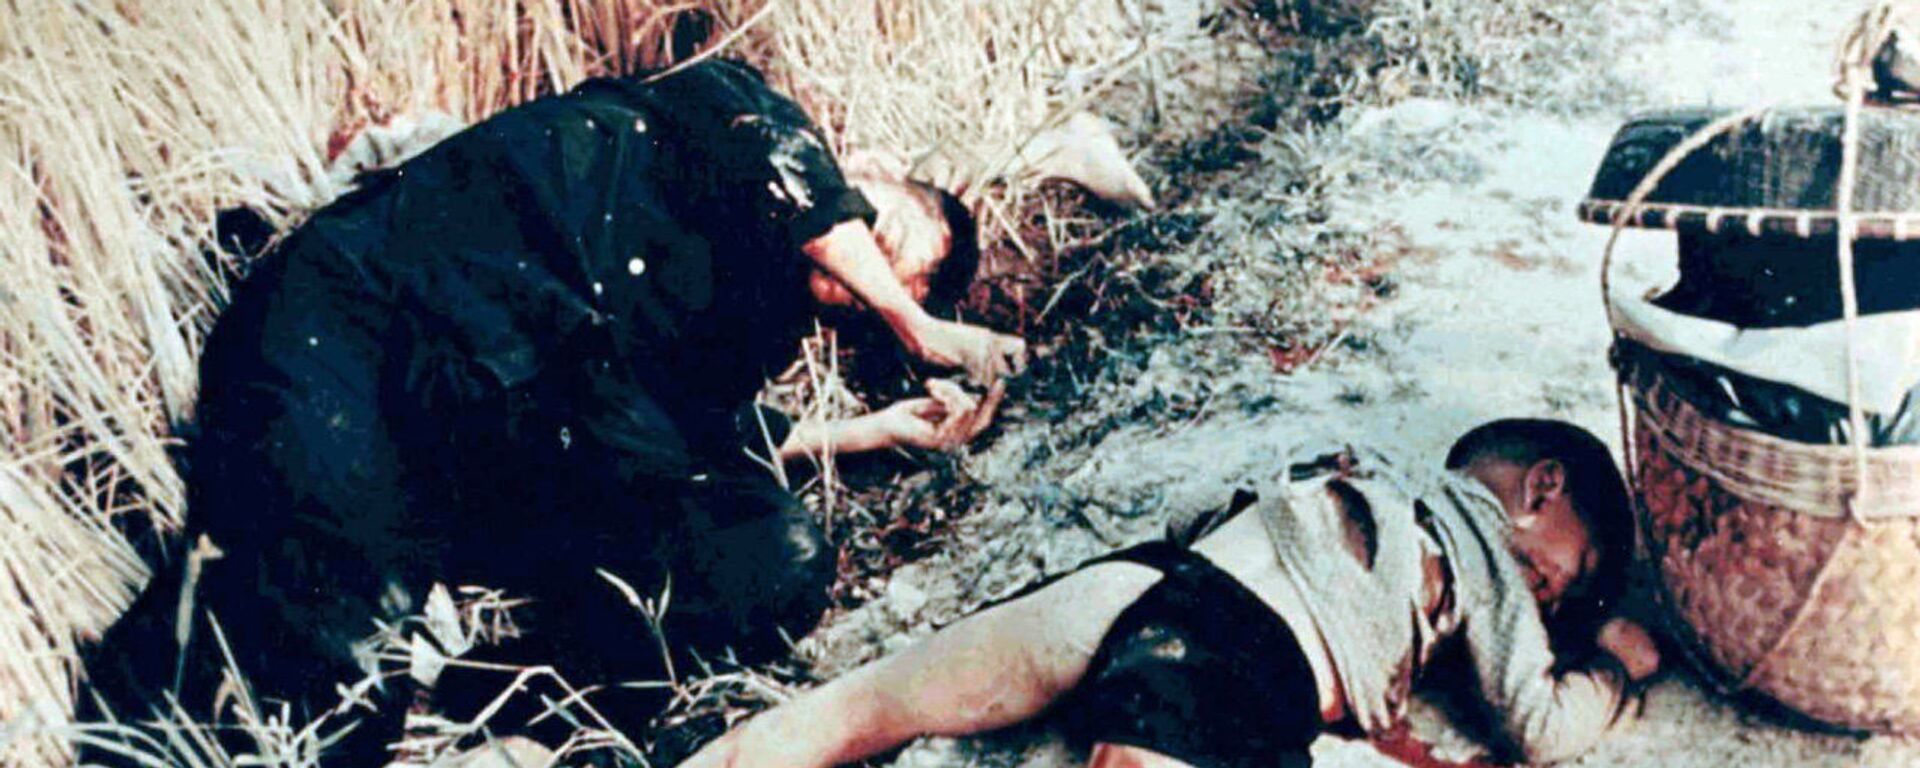 Vụ thảm sát dân thường do binh lính Quân đội Hoa Kỳ tiến hành ở Sơn Mỹ, Việt Nam. Năm 1968 - Sputnik Việt Nam, 1920, 16.03.2018